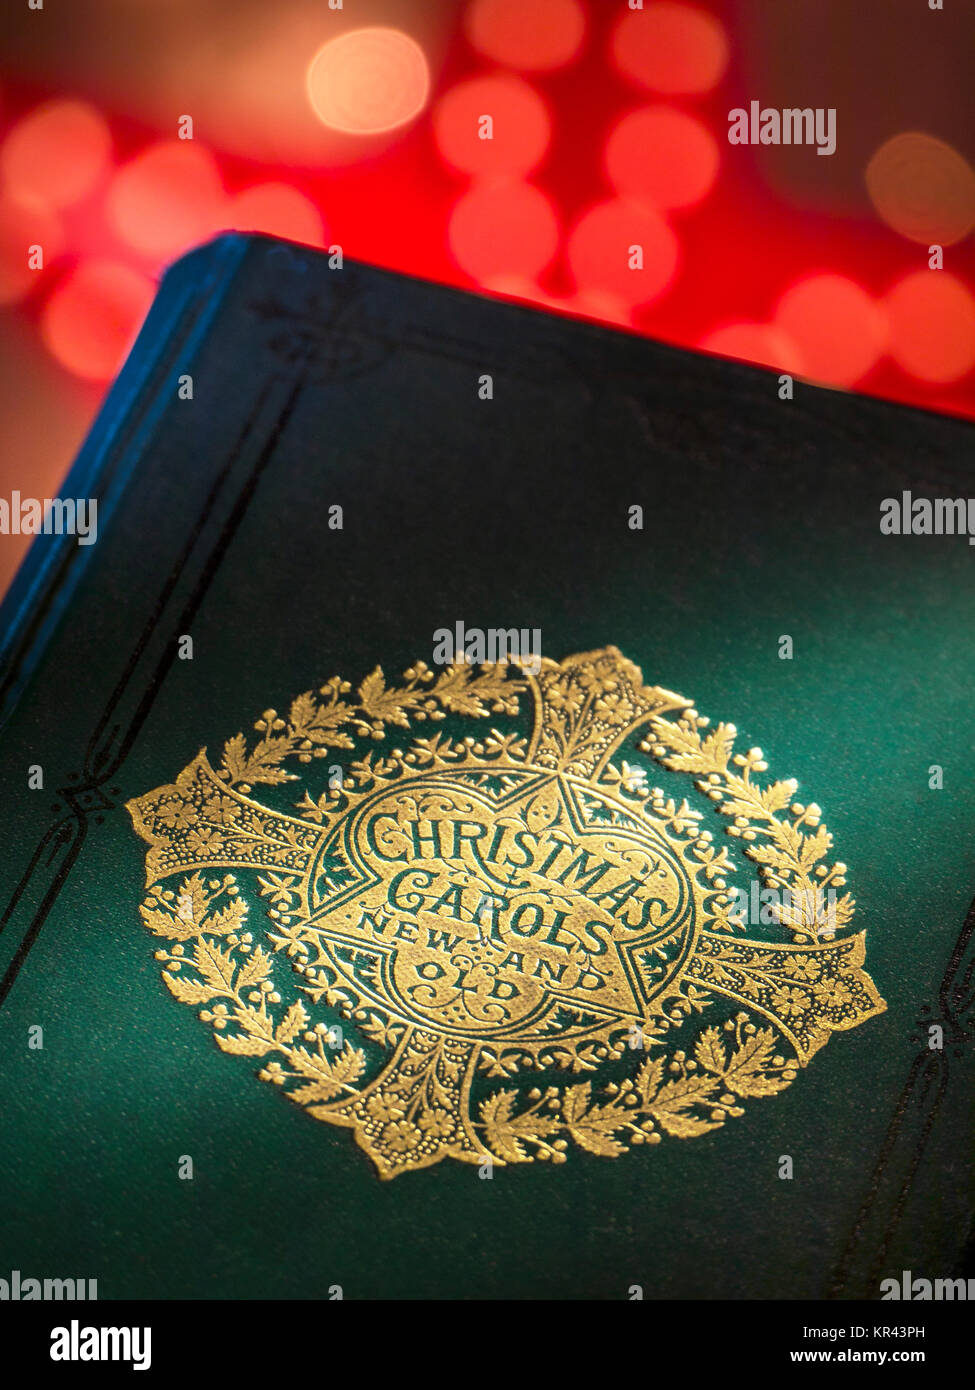 Copertina del libro di musica "Christmas Carols" con luci natalizie calde e invitanti in occasione del tradizionale evento musicale stagionale di Natale. Foto Stock